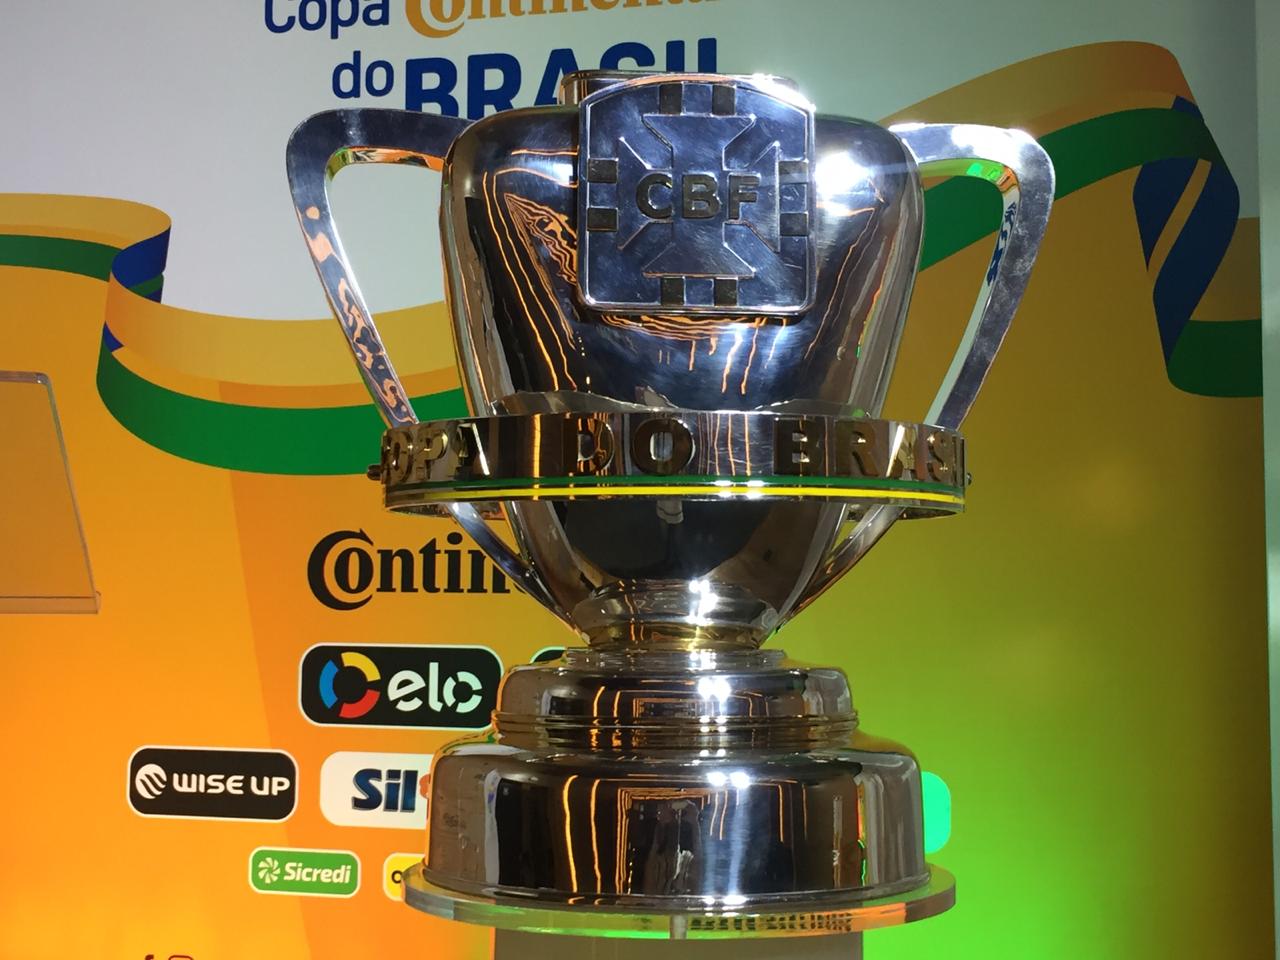 Com premiação alta, Copa do Brasil se torna prioridade para os clubes